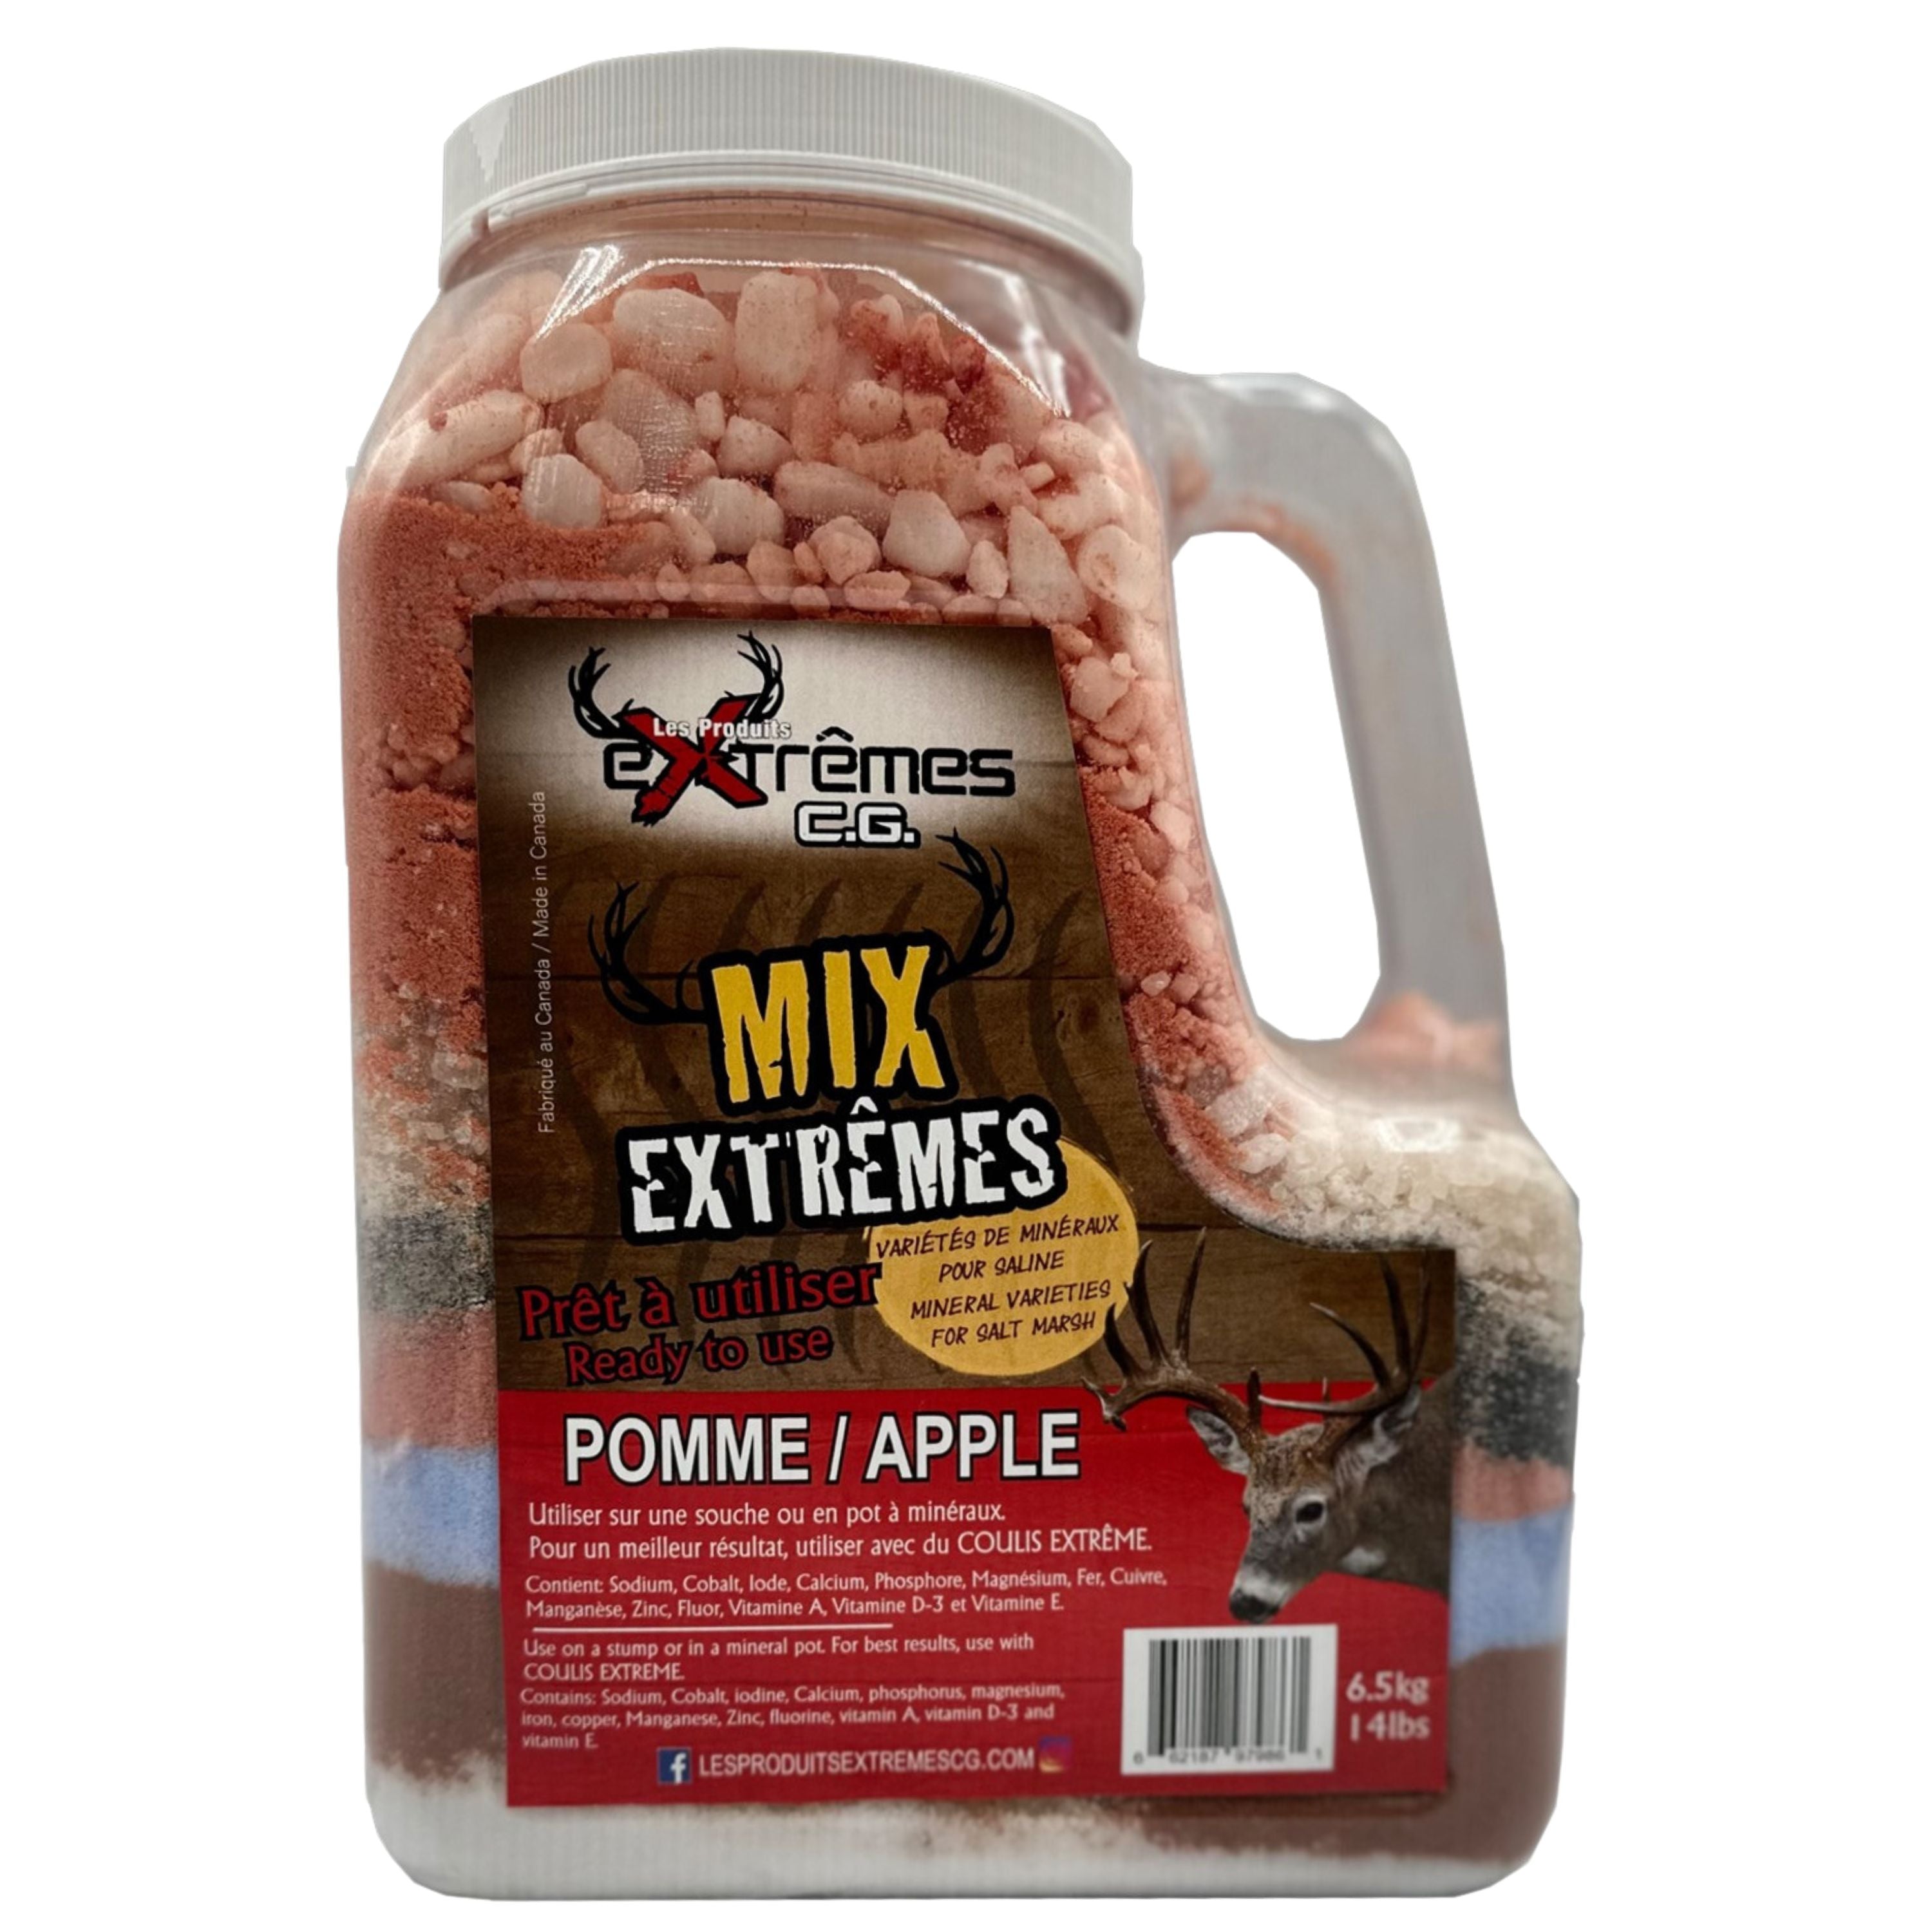 Minéraux pour chevreuil à saveur de pomme "Mix Extrêmes" - 6,5 kg